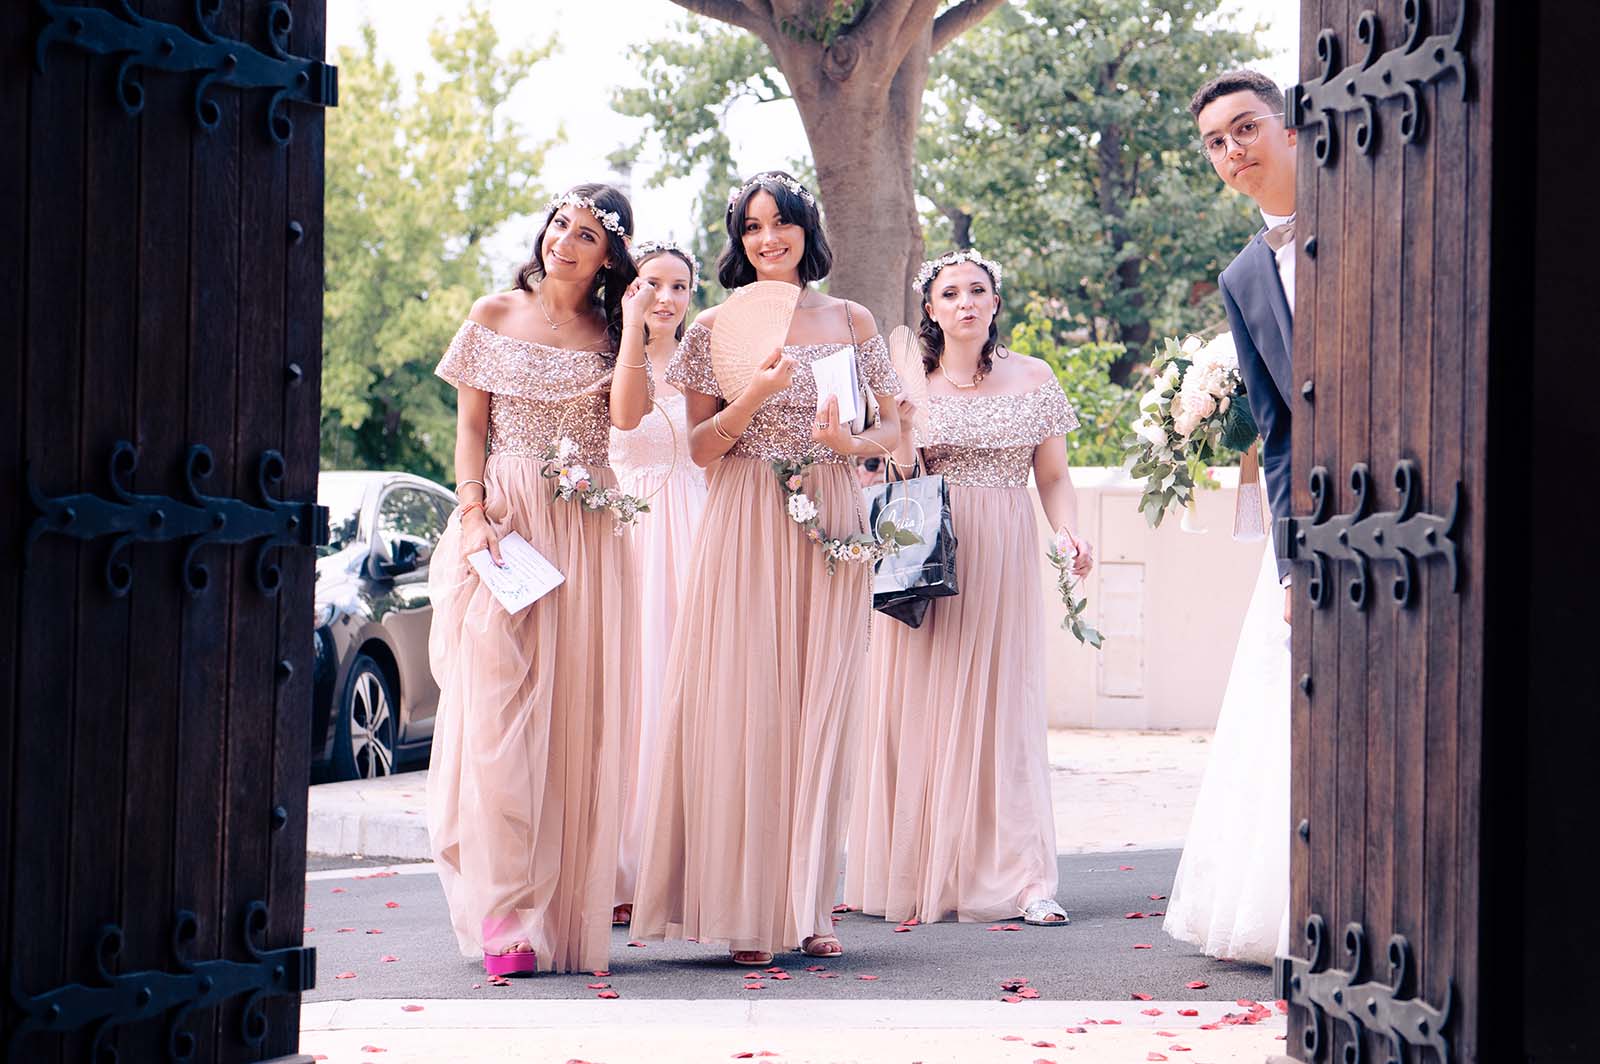 groupe de jeunes filles habillées en robe pailletées rose